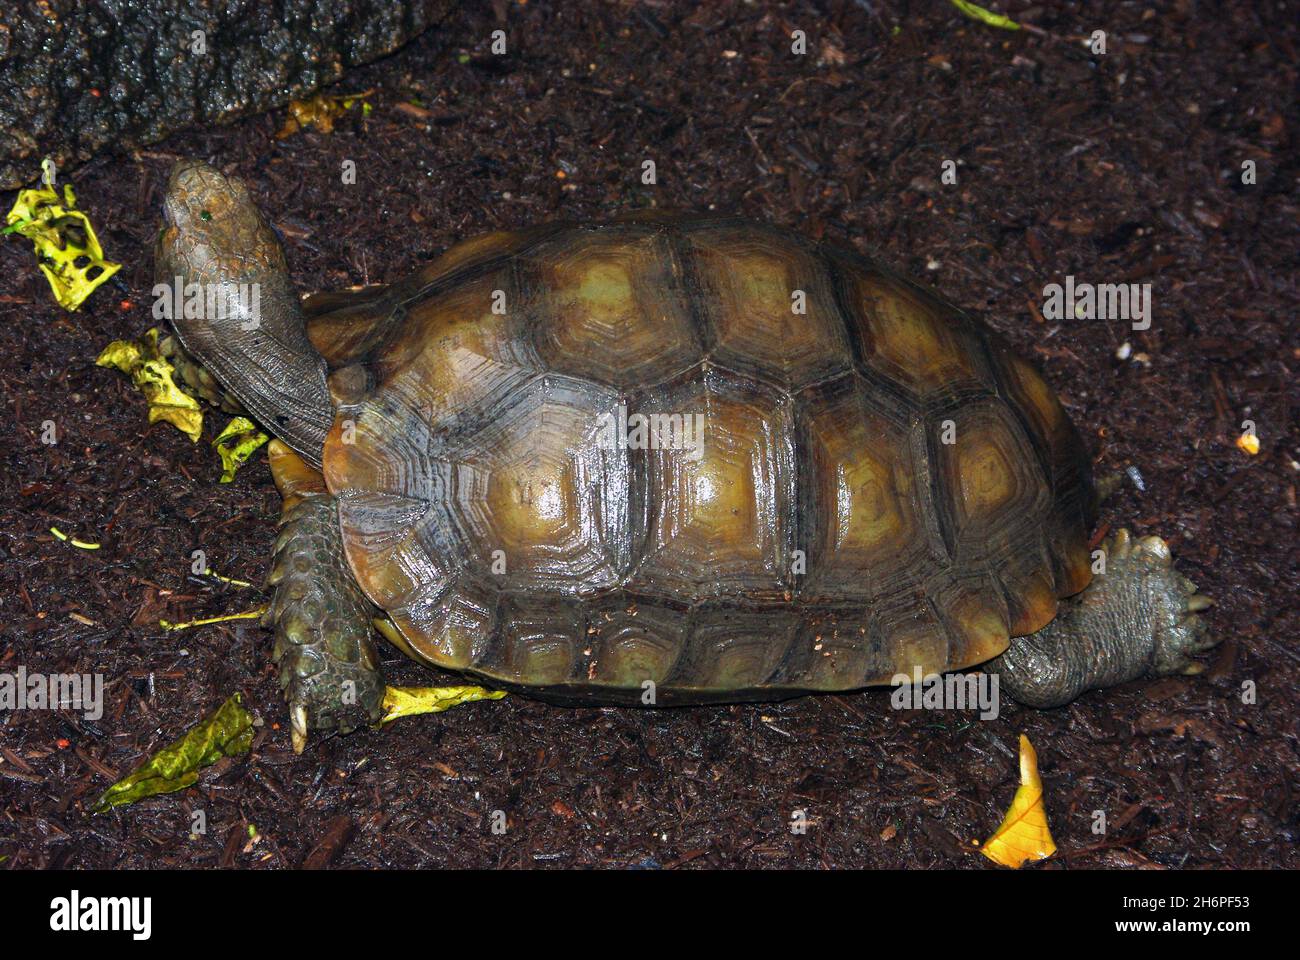 La tortue forestière asiatique (Manouria emys), également connue sous le nom de tortue brune asiatique, est une espèce de tortue de la famille des Testudinidae Banque D'Images